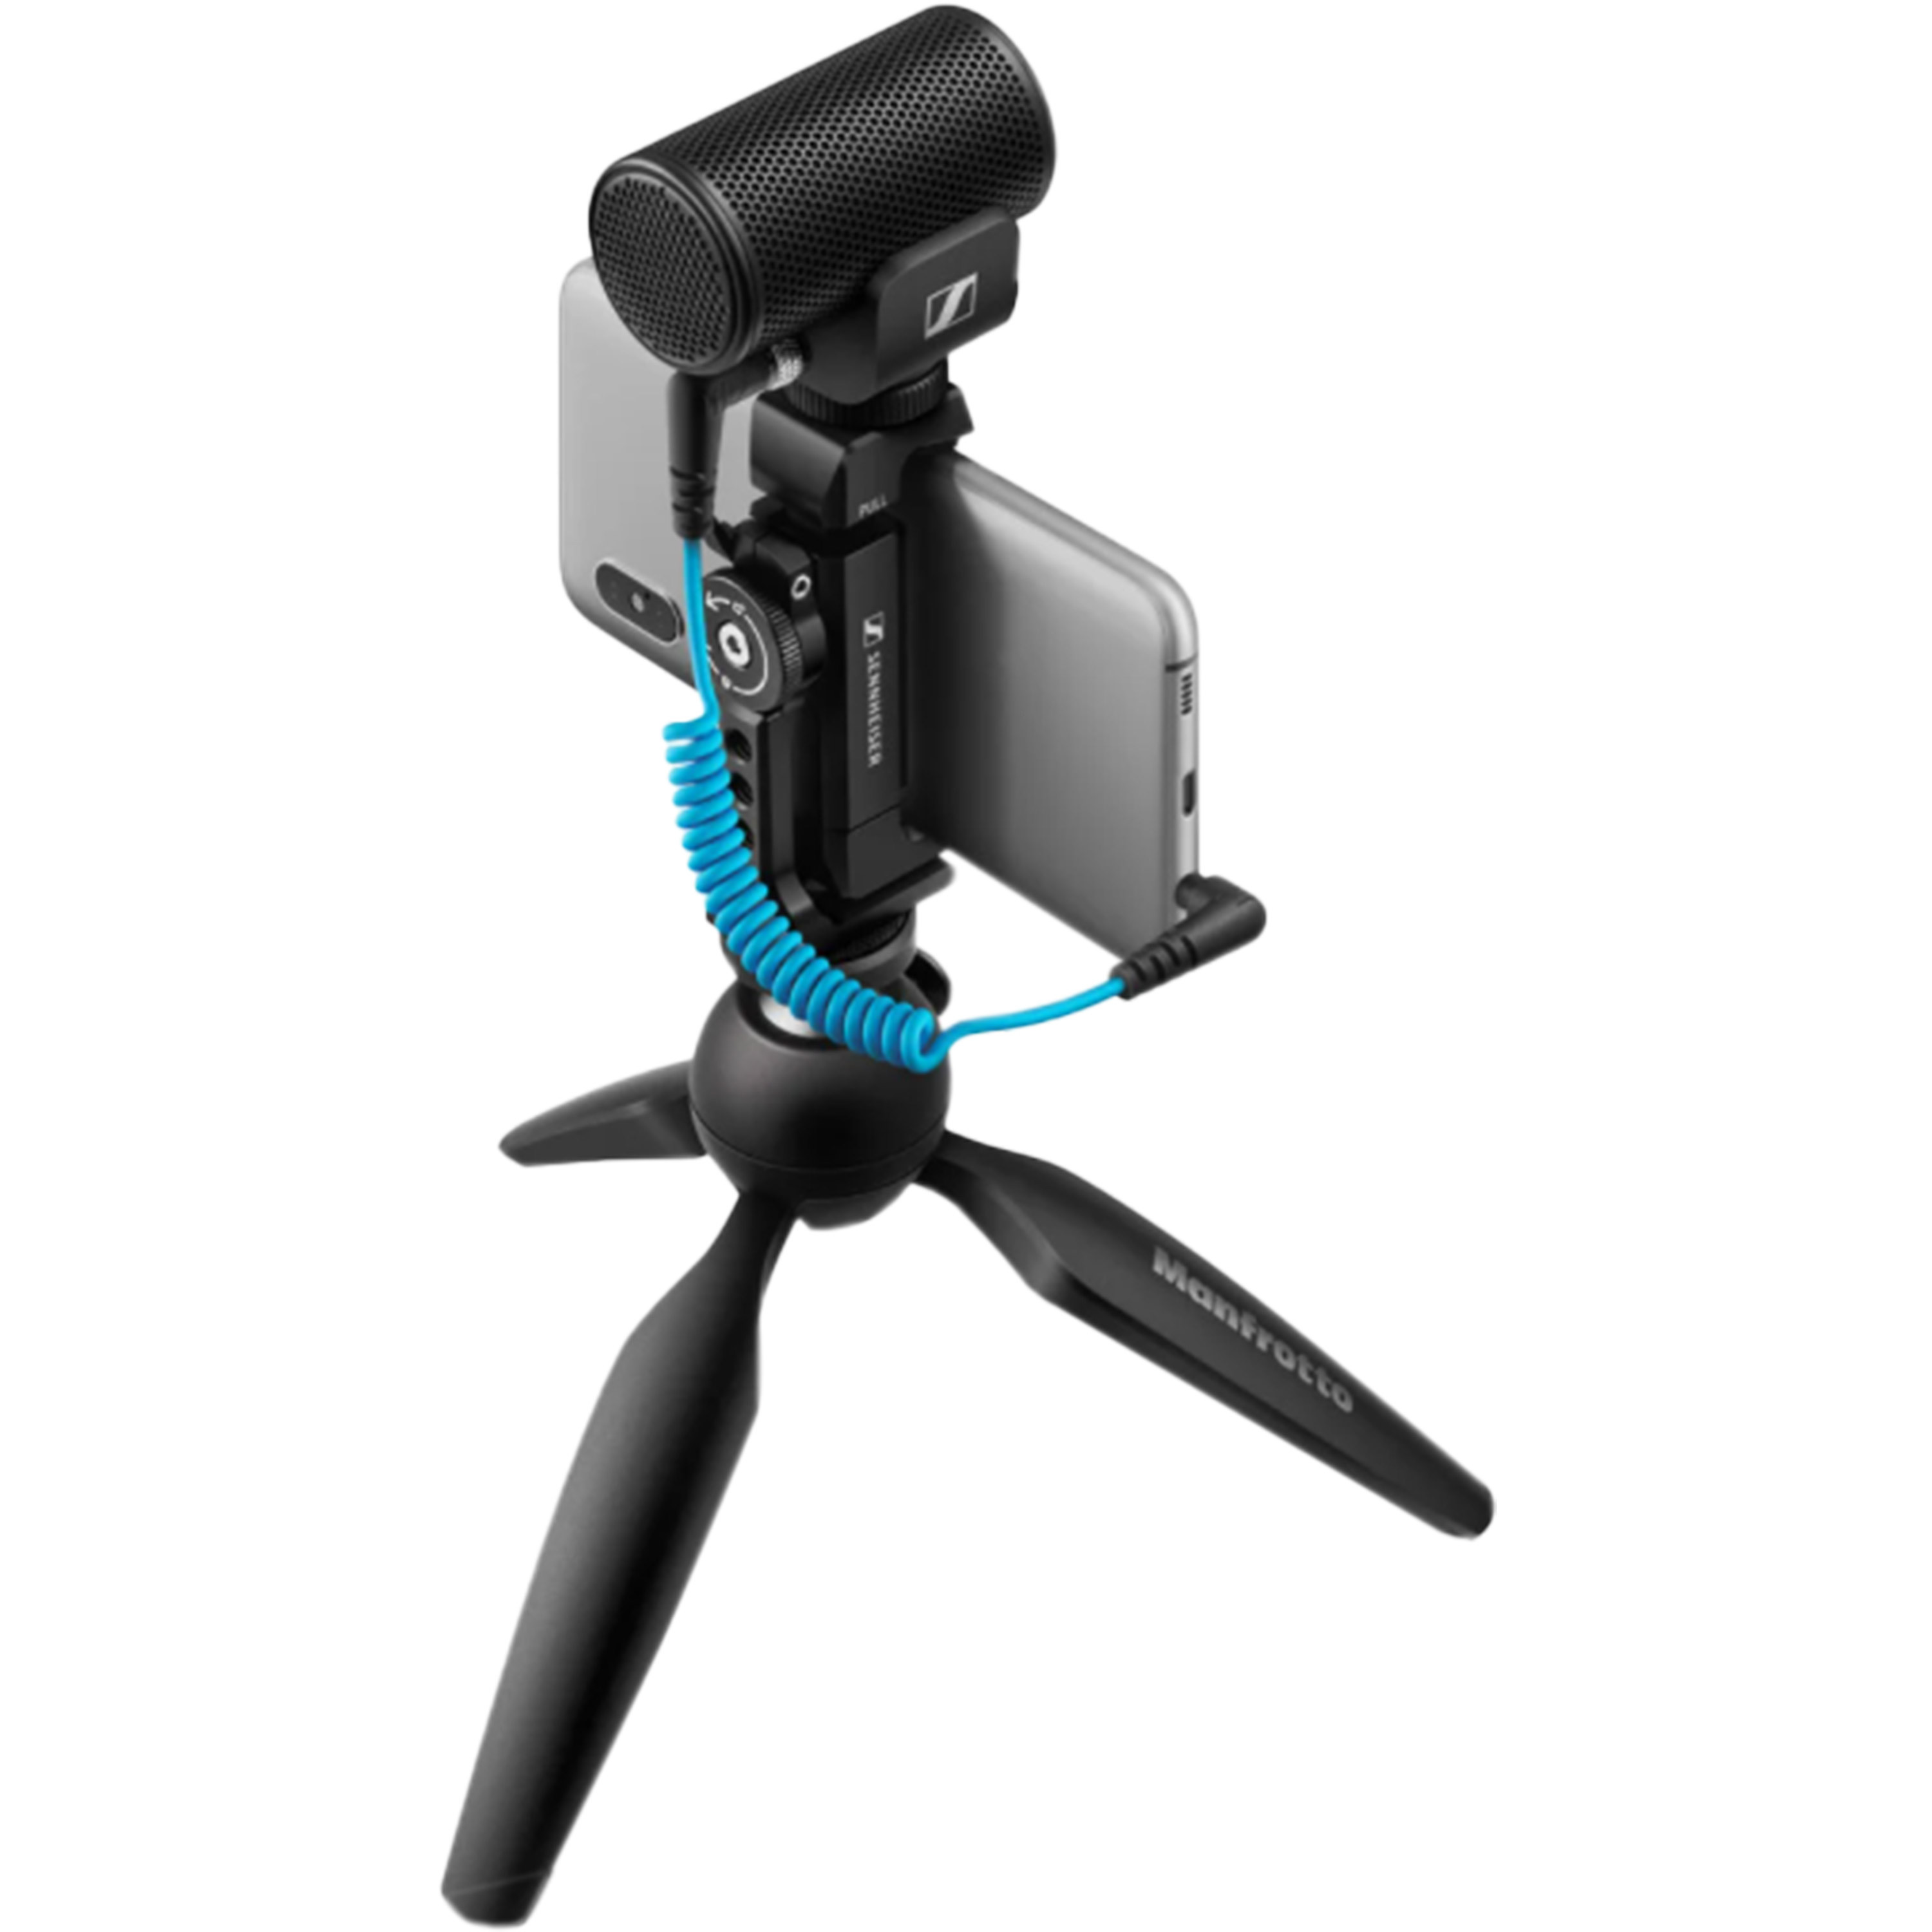 MKE 200 Mobile Kit - Micros pour caméra vidéo et smartphone